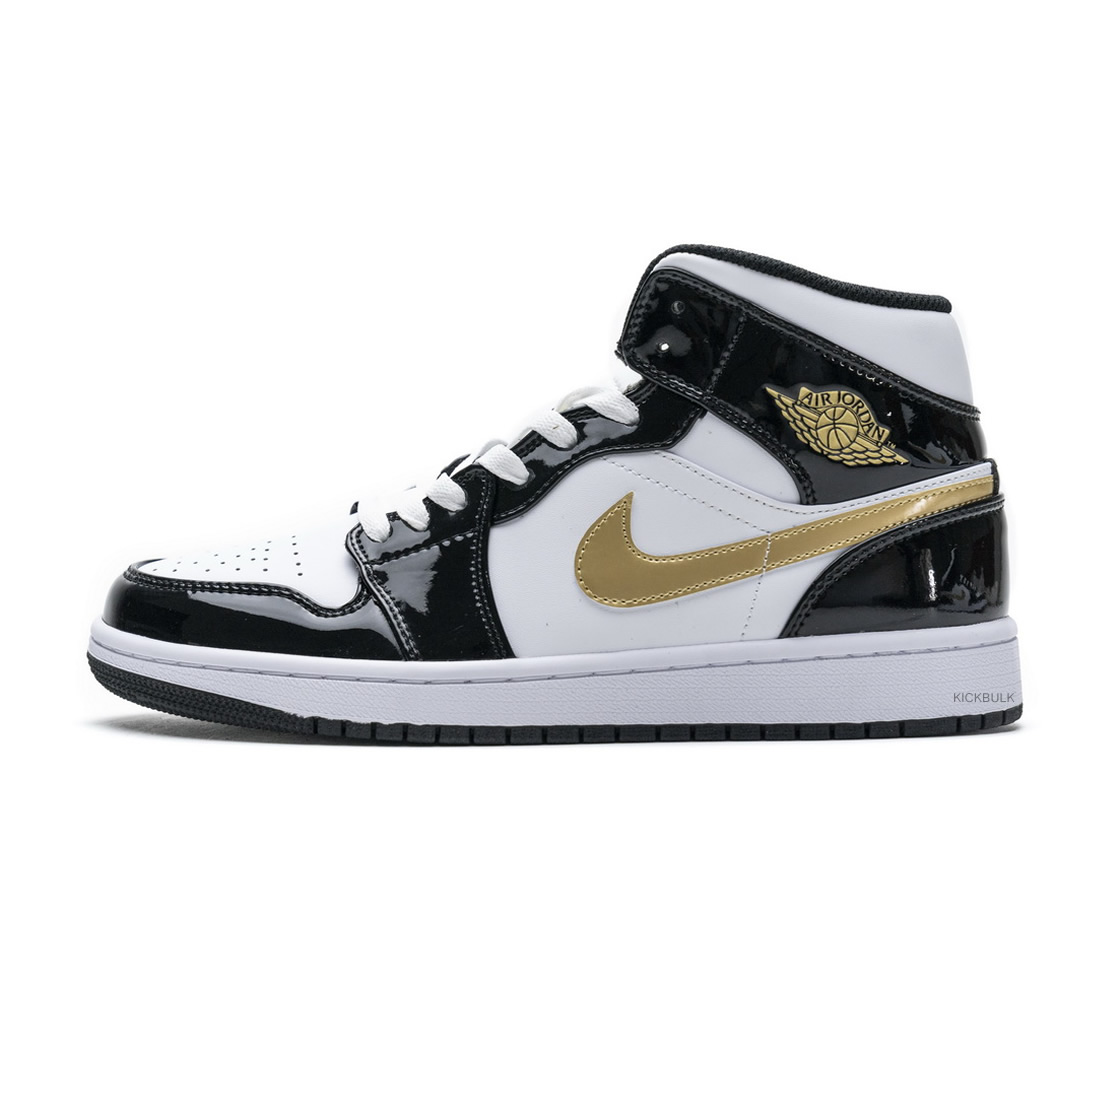 Nike Air Jordan 1 Mid Gold Patent Leather 852542 007 1 - kickbulk.co